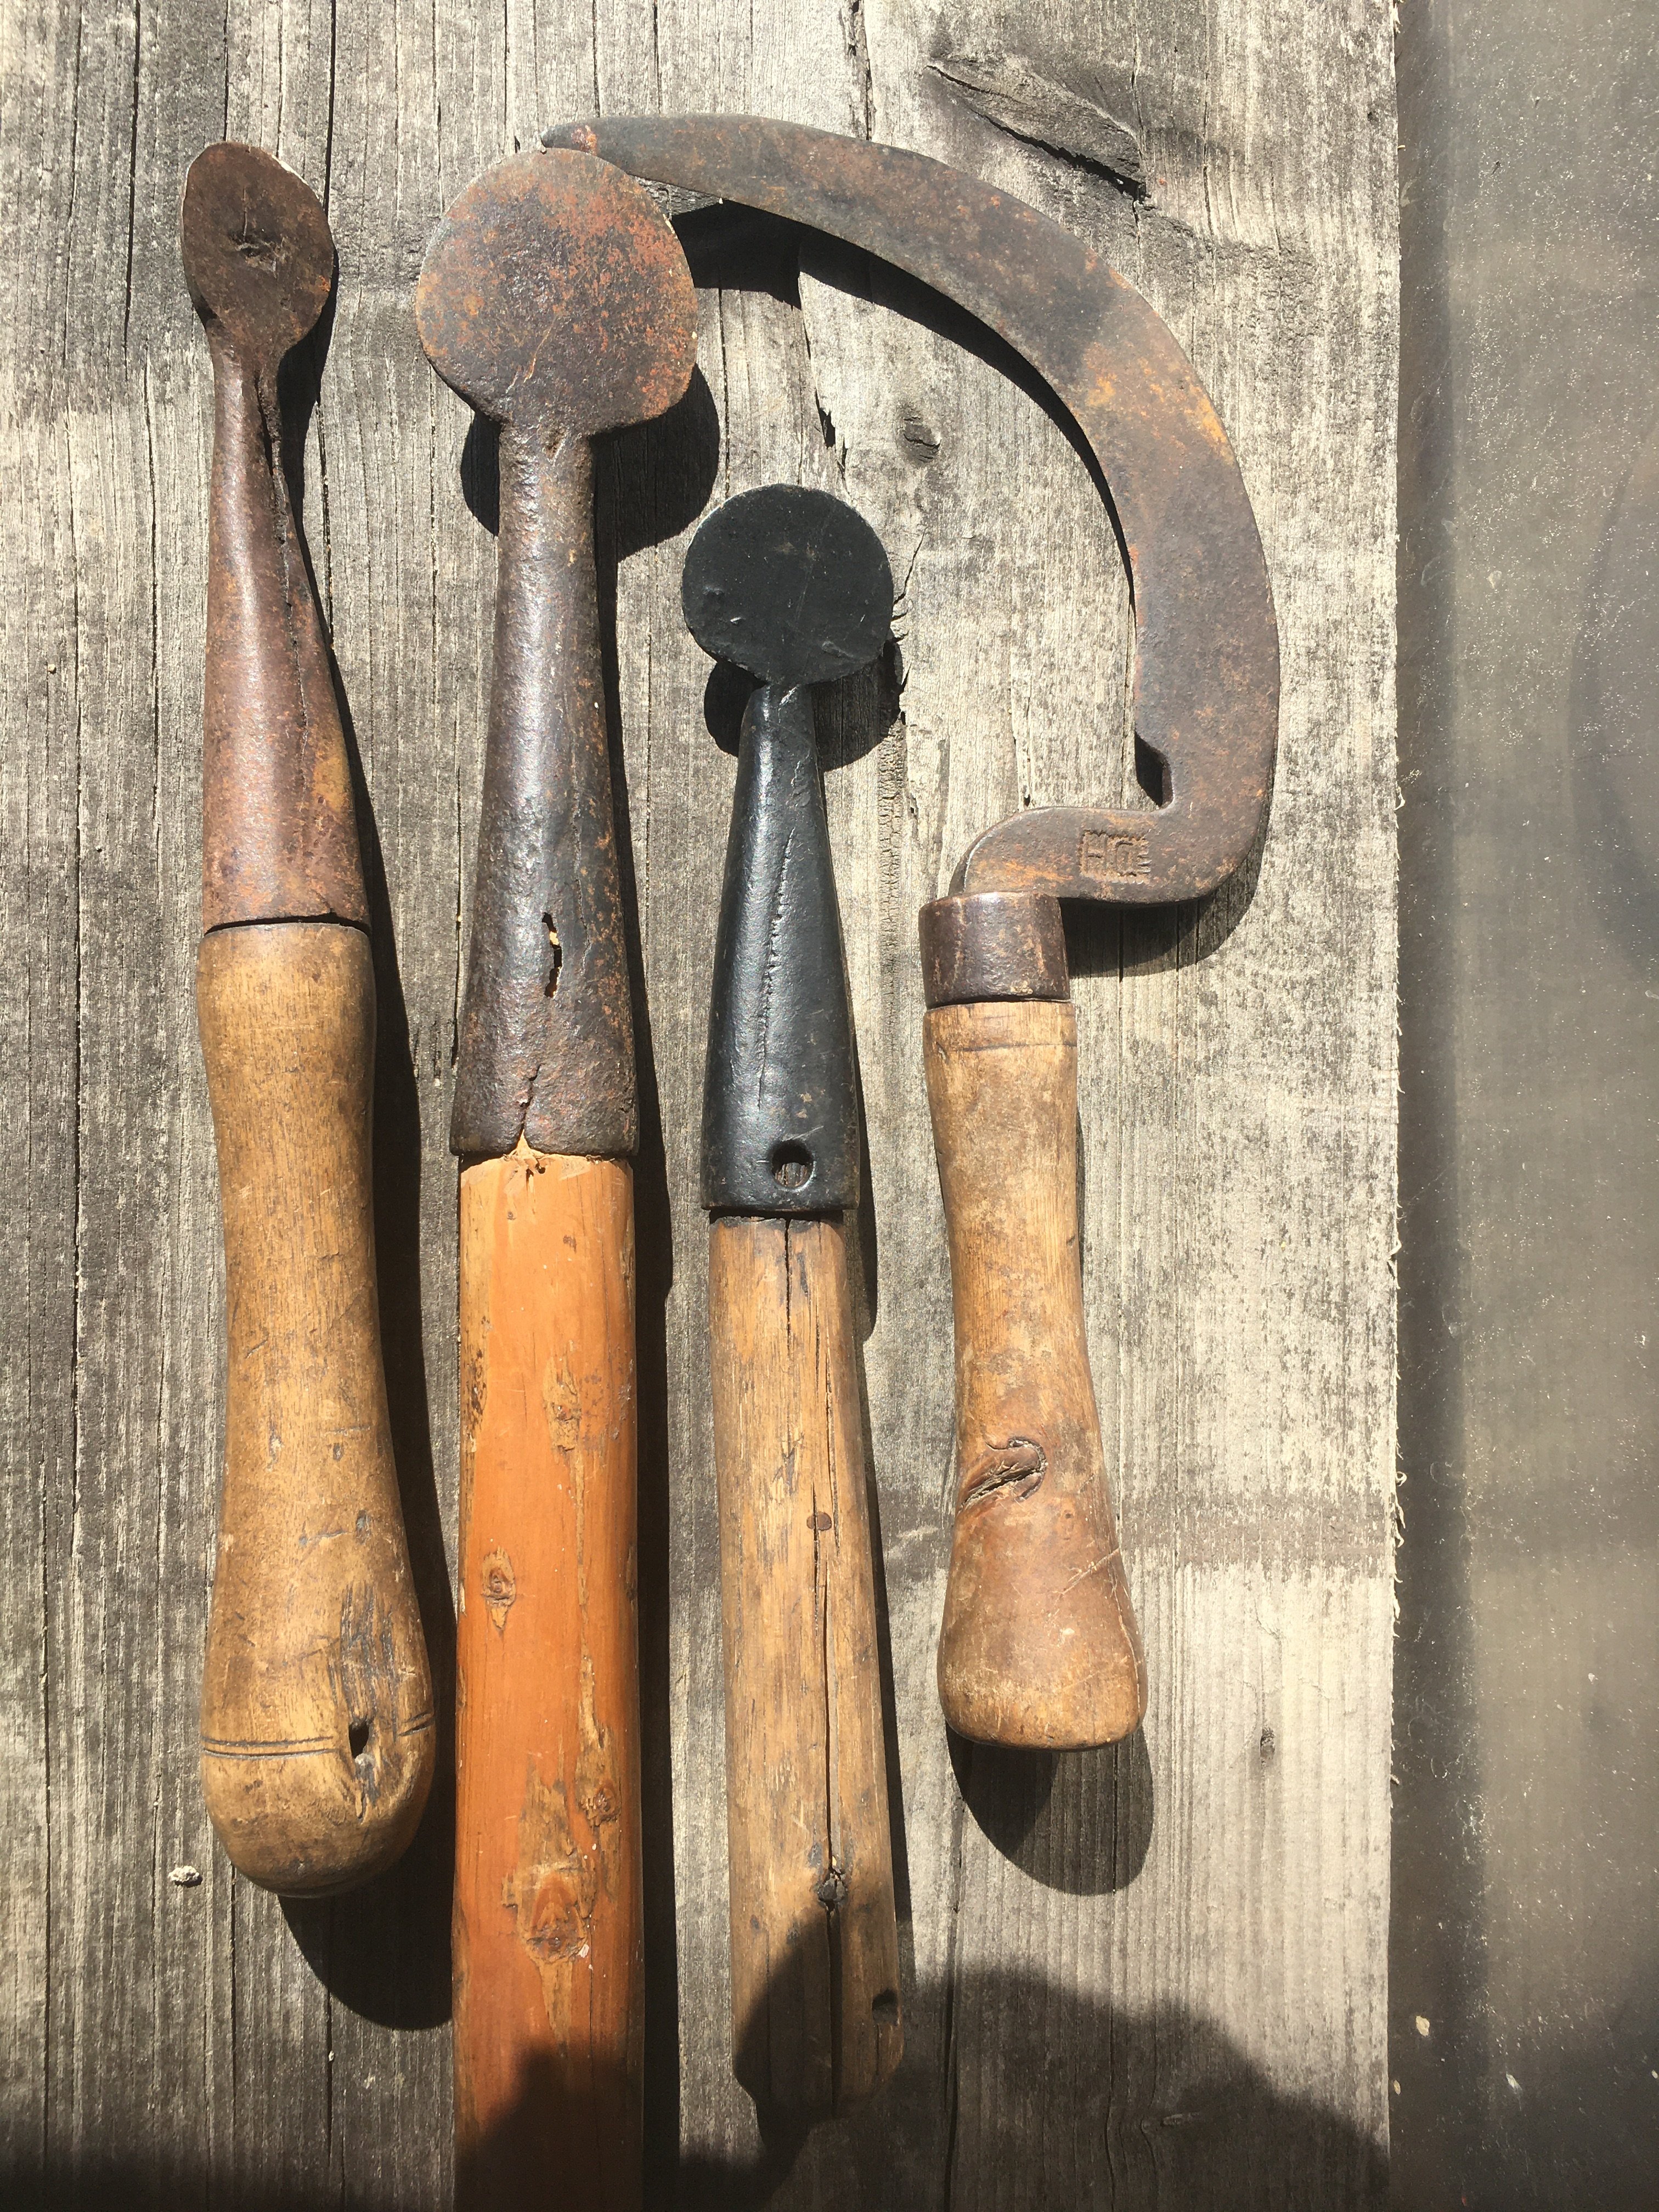 Schällöffel zum Loheschälen (1. Werkzeug von rechts) (Besucherbergwerk und Bergbaumuseum "Grube Silberhardt" CC BY-NC-SA)